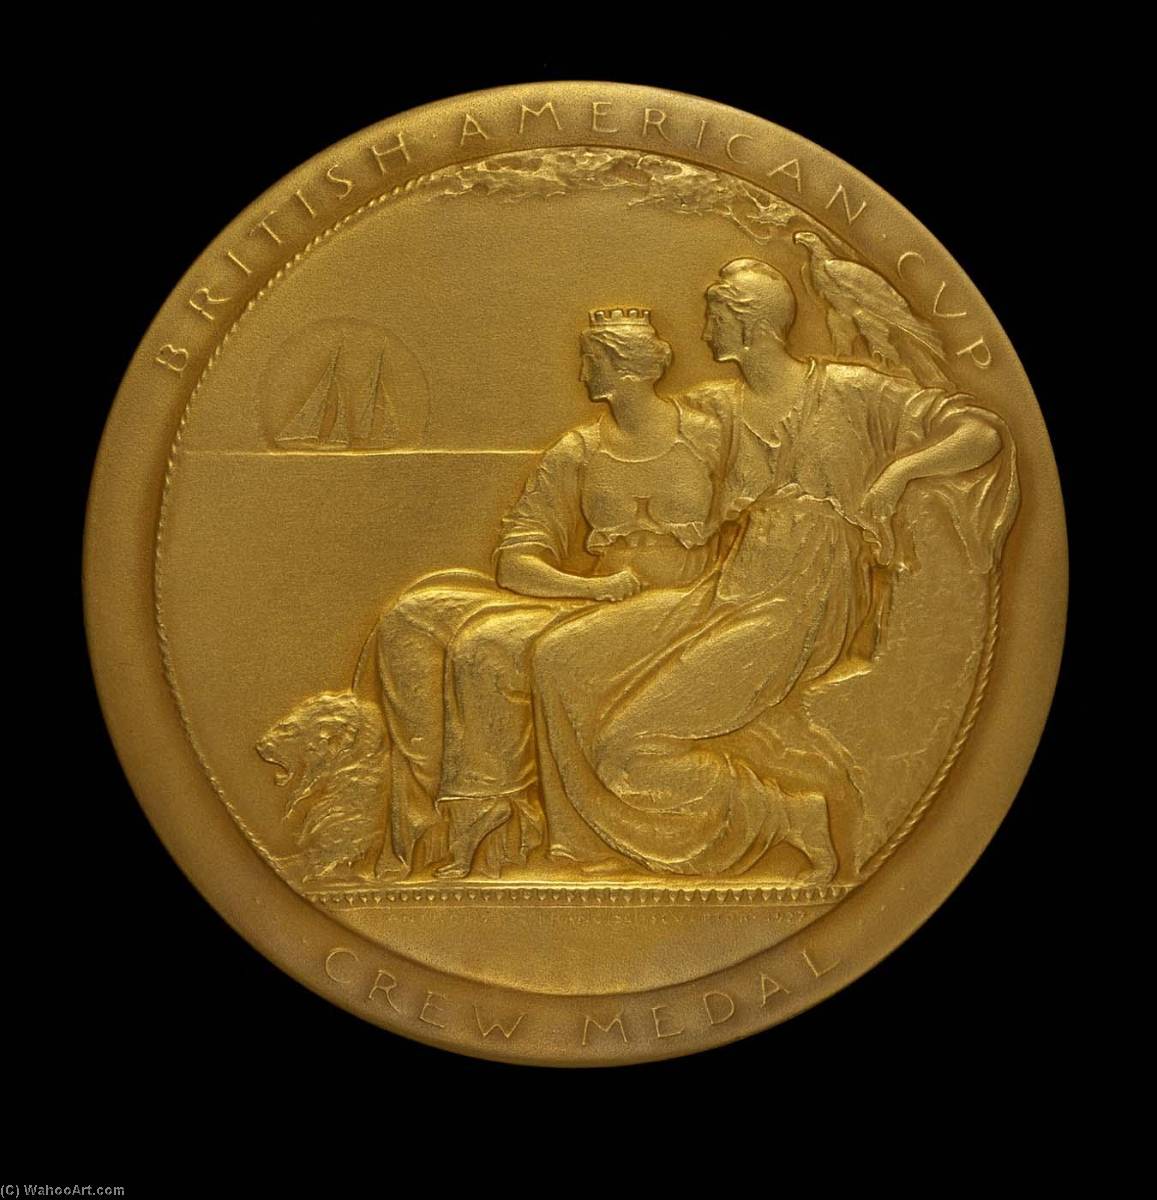 WikiOO.org - אנציקלופדיה לאמנויות יפות - ציור, יצירות אמנות Anthony De Francisci - British American Cup Medal (obverse)